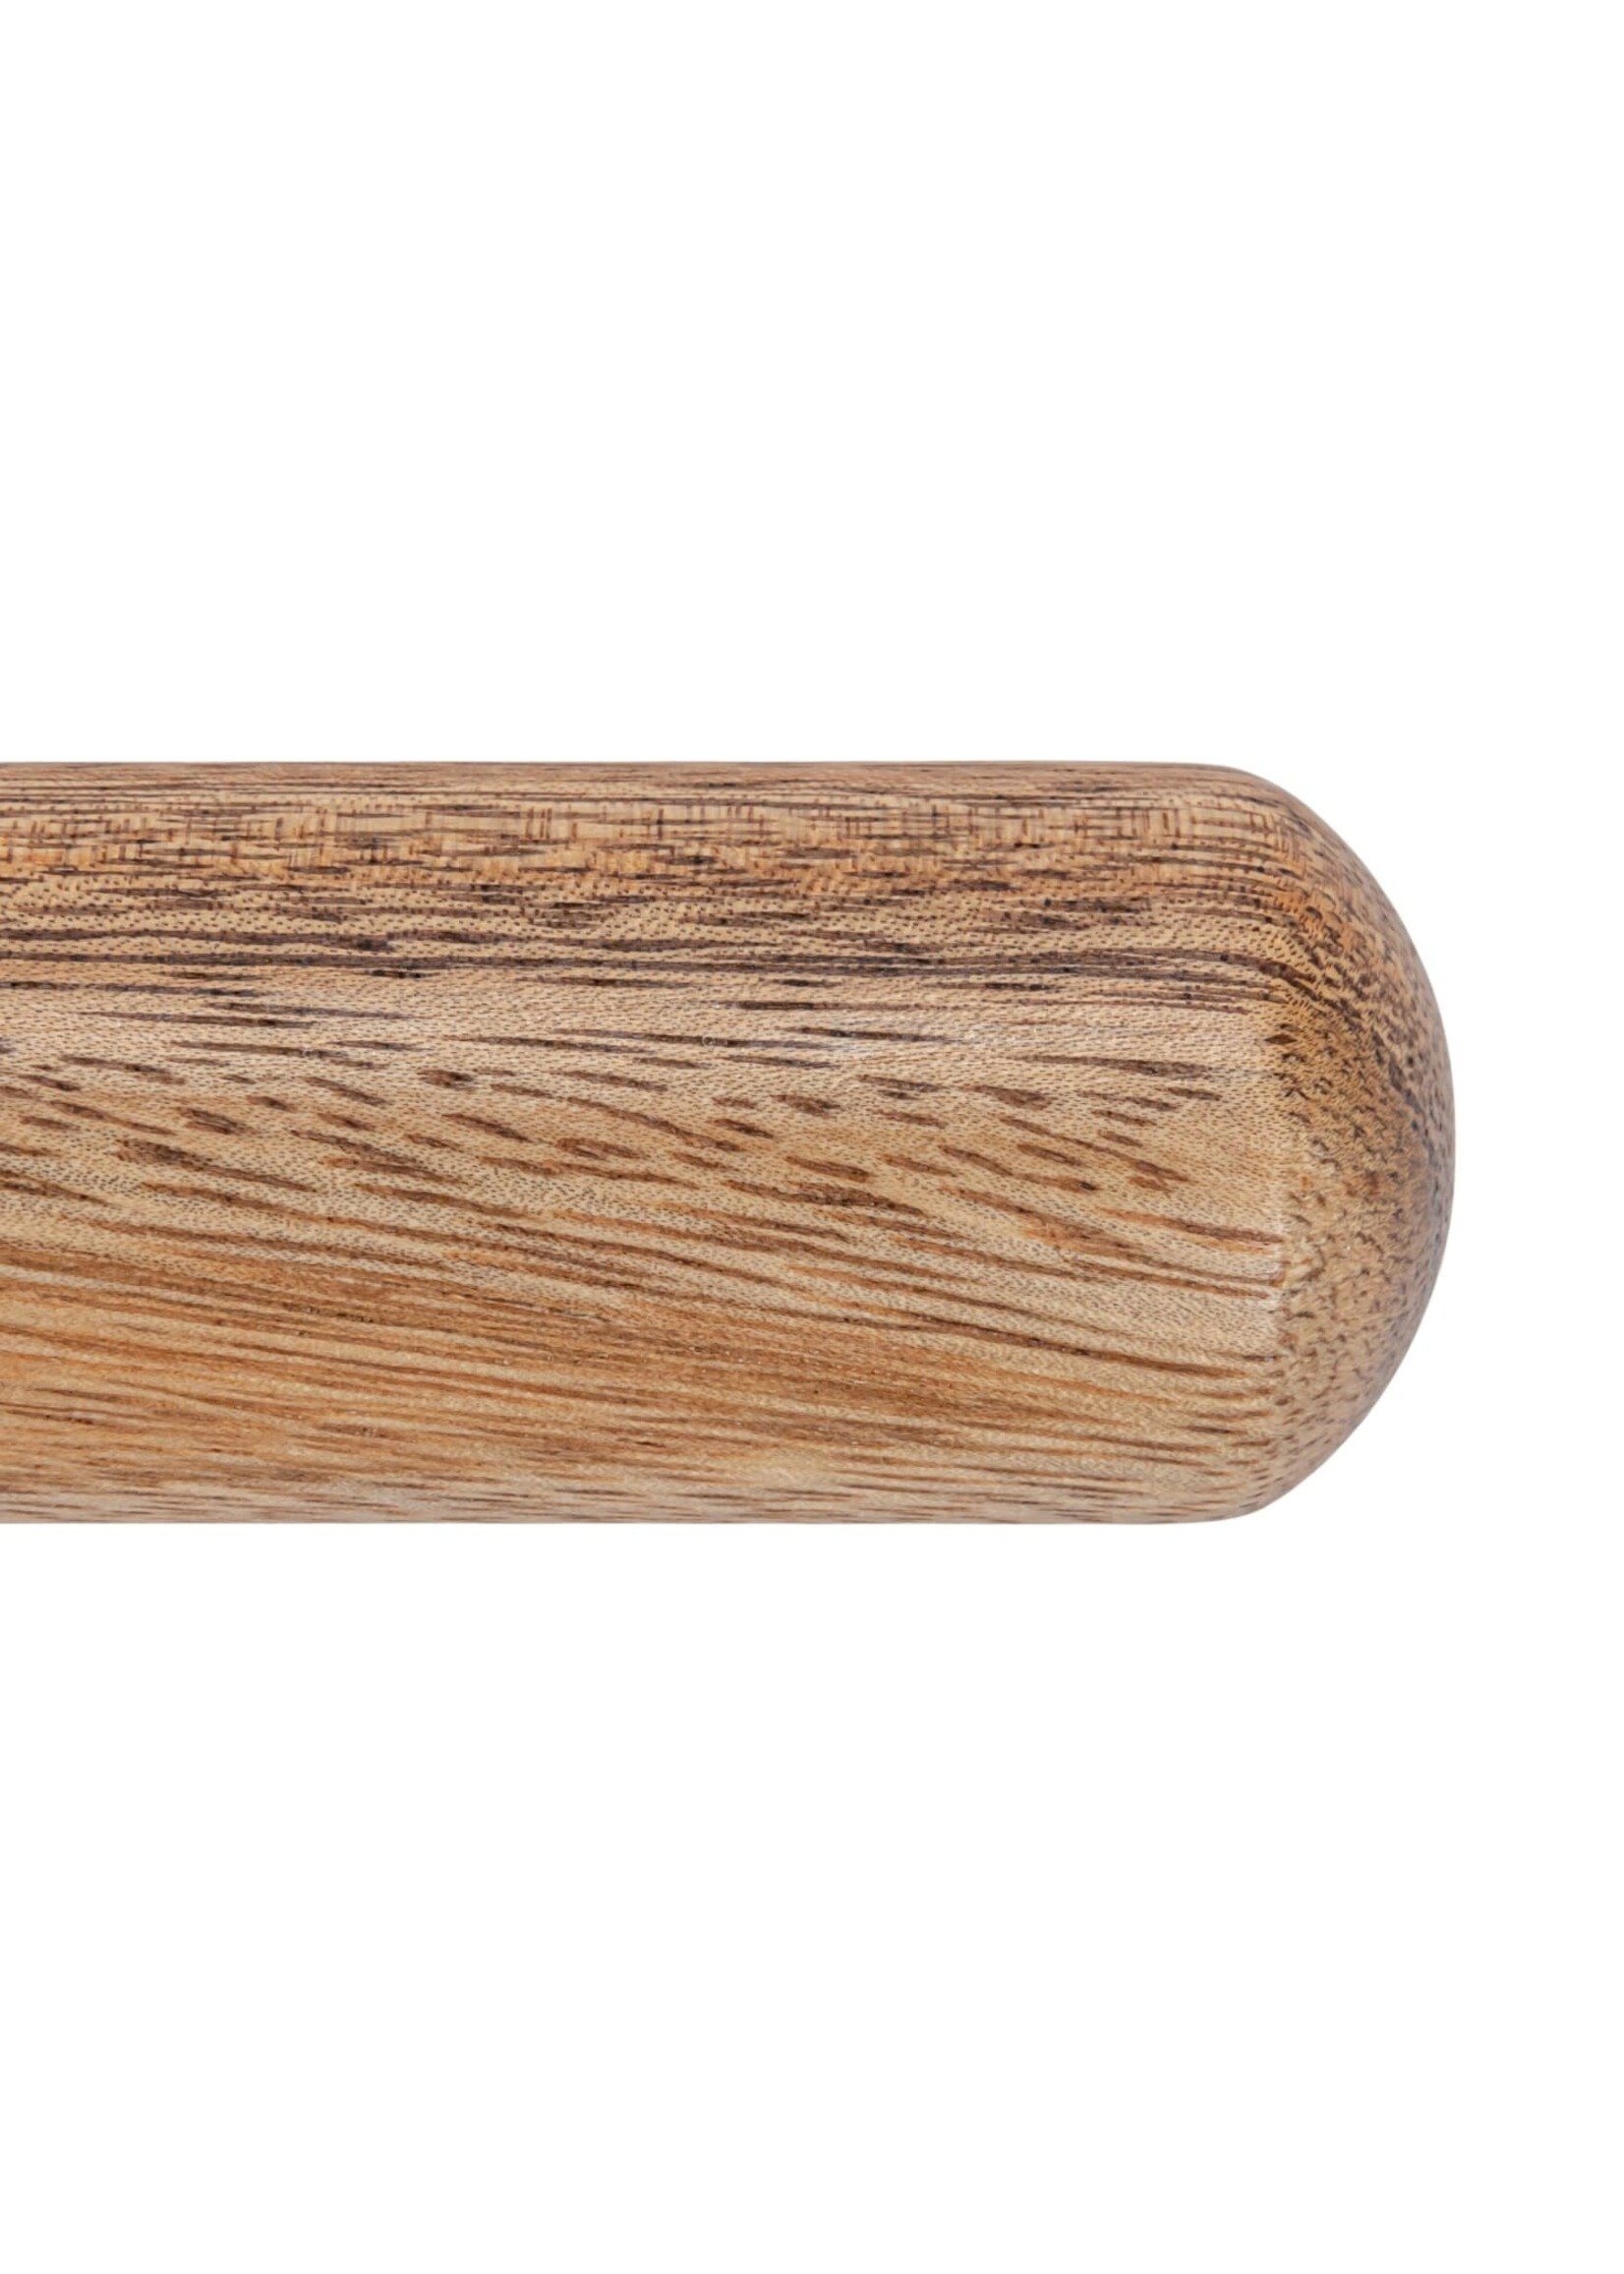 Suar Wood Rolling Pin, Natural